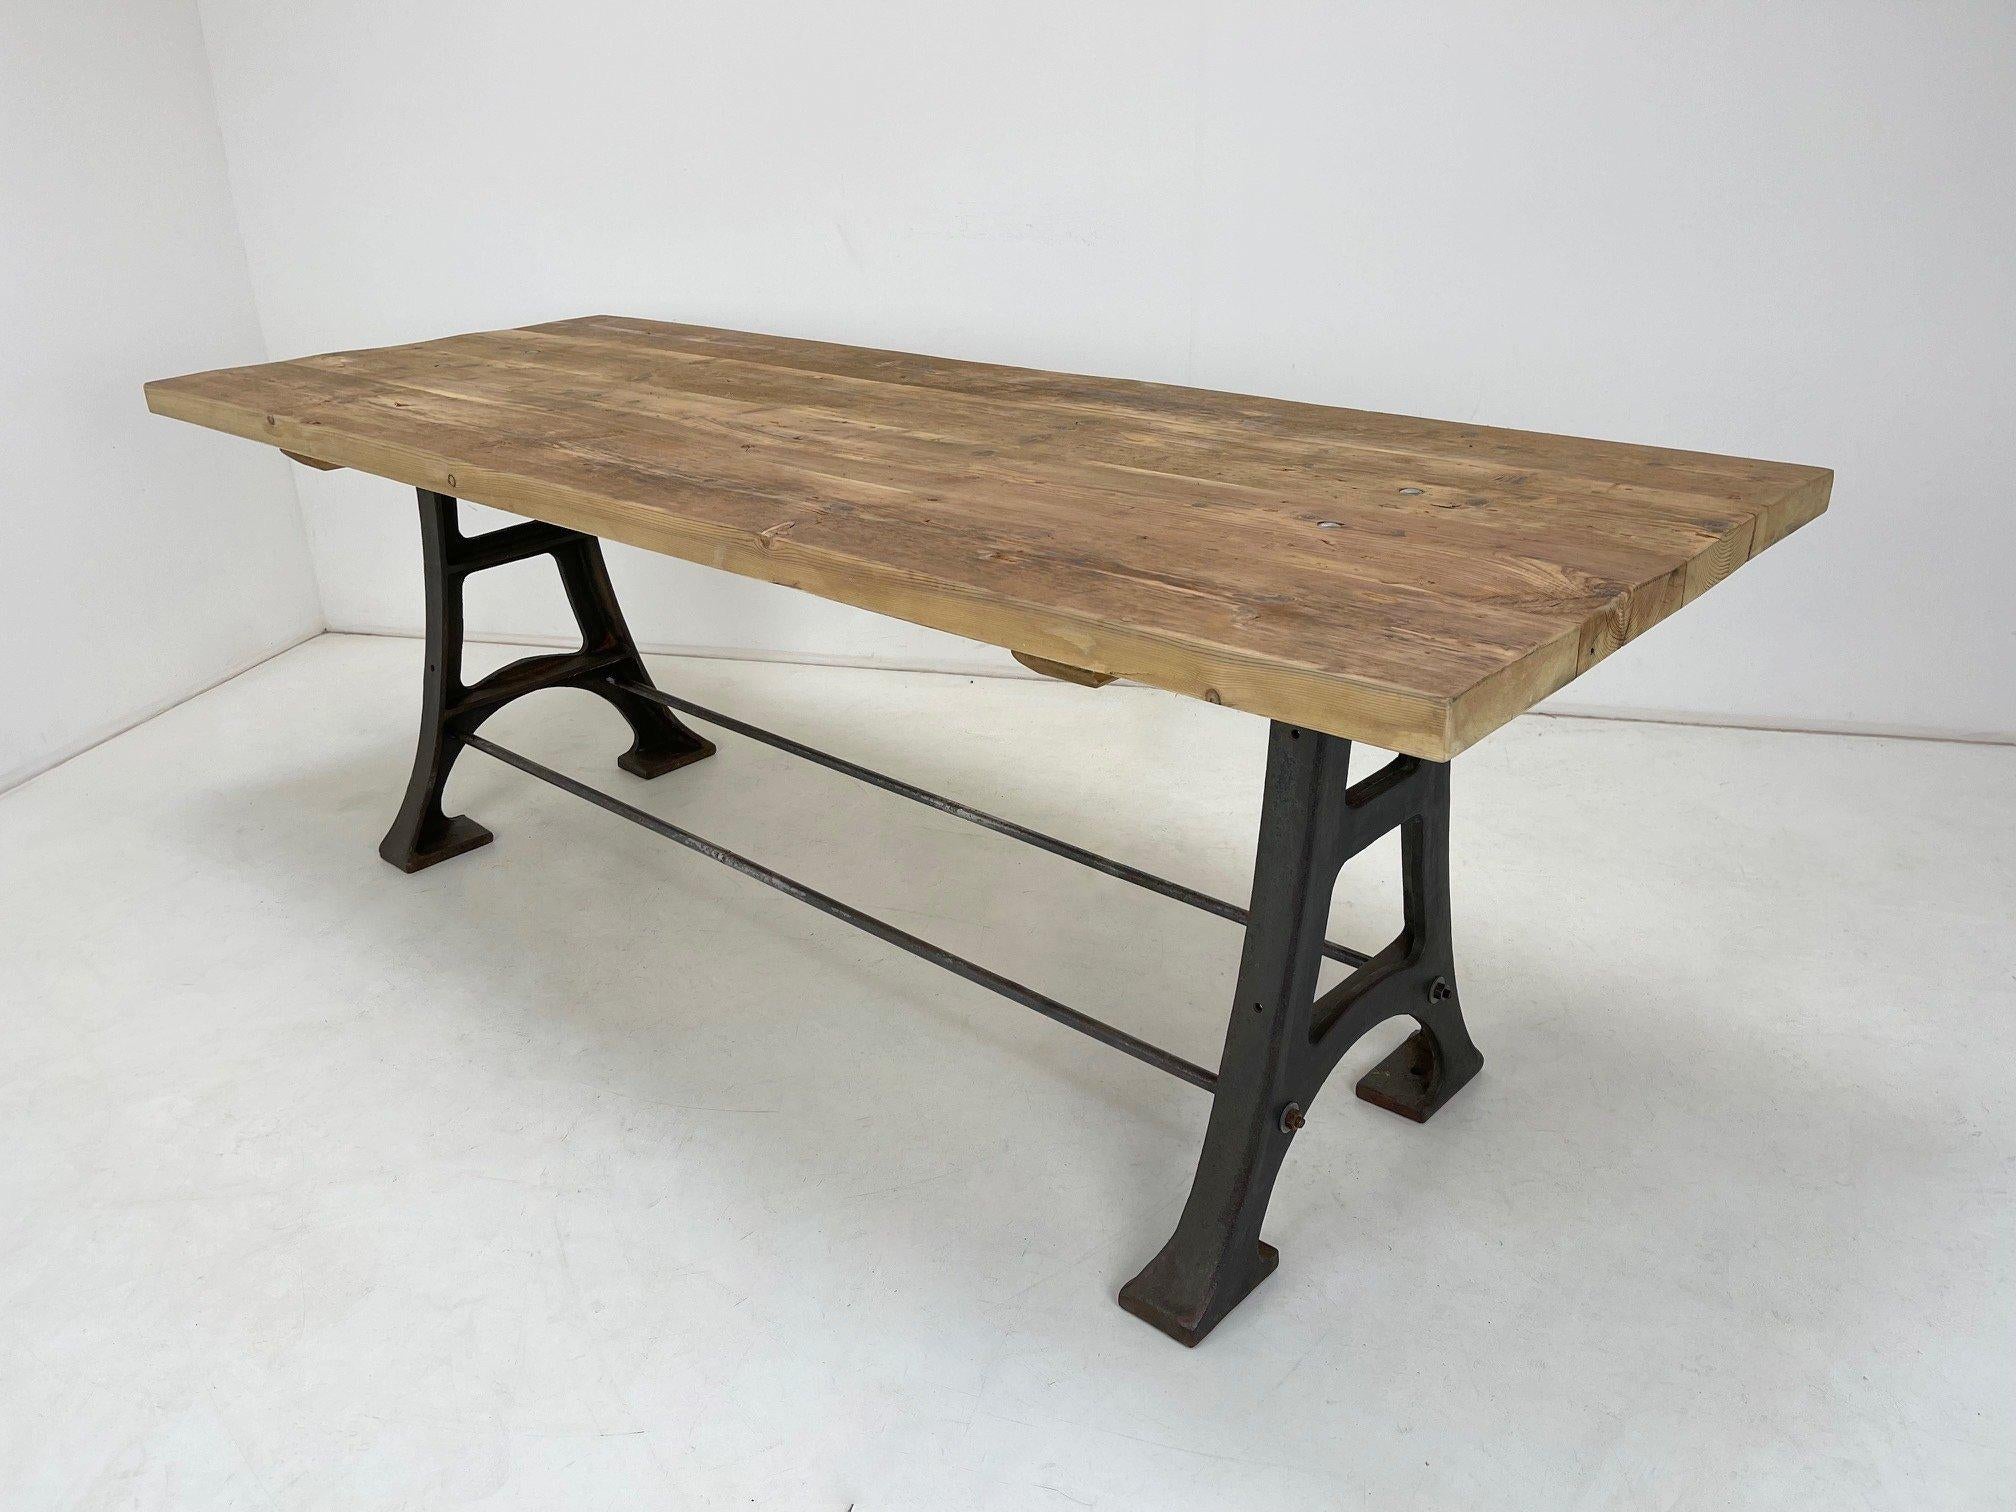 Czech Wood & Steel Industrial Table